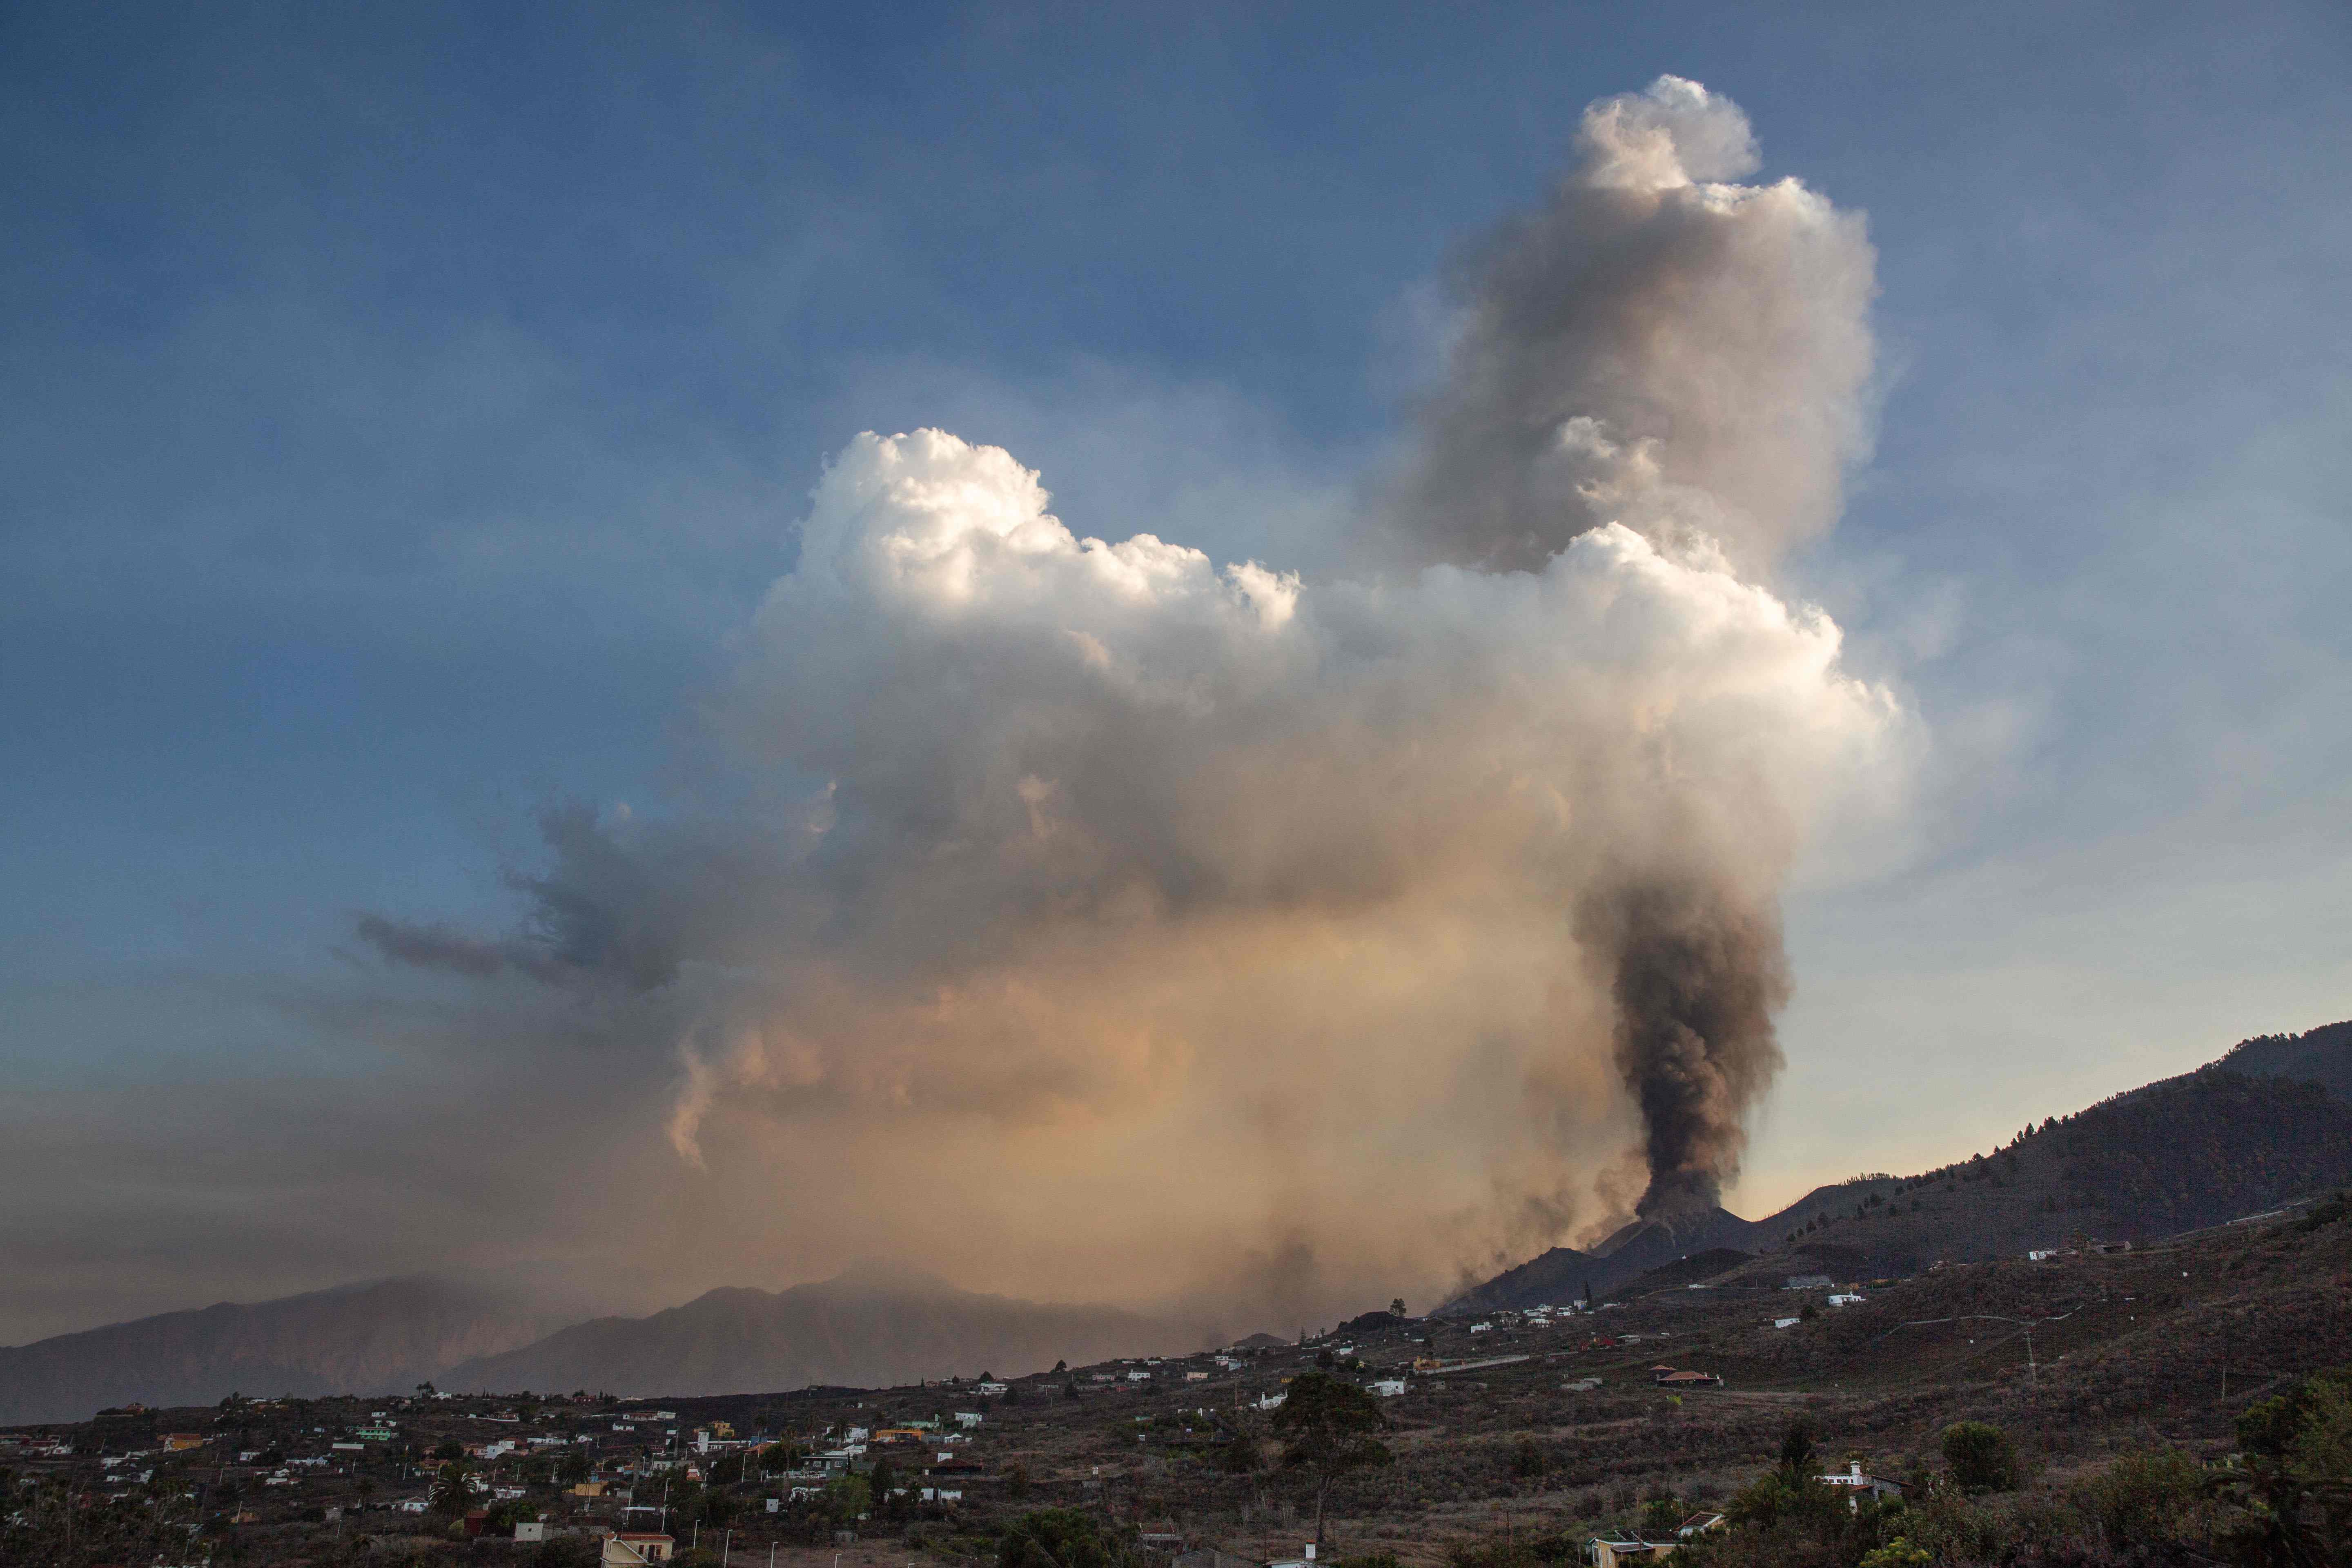 El aeropuerto de La Palma, afectado por la erupción del volcán Cumbre Vieja, está inoperativo debido a la acumulación de ceniza volcánica. (Foto Prensa Libre: AFP)